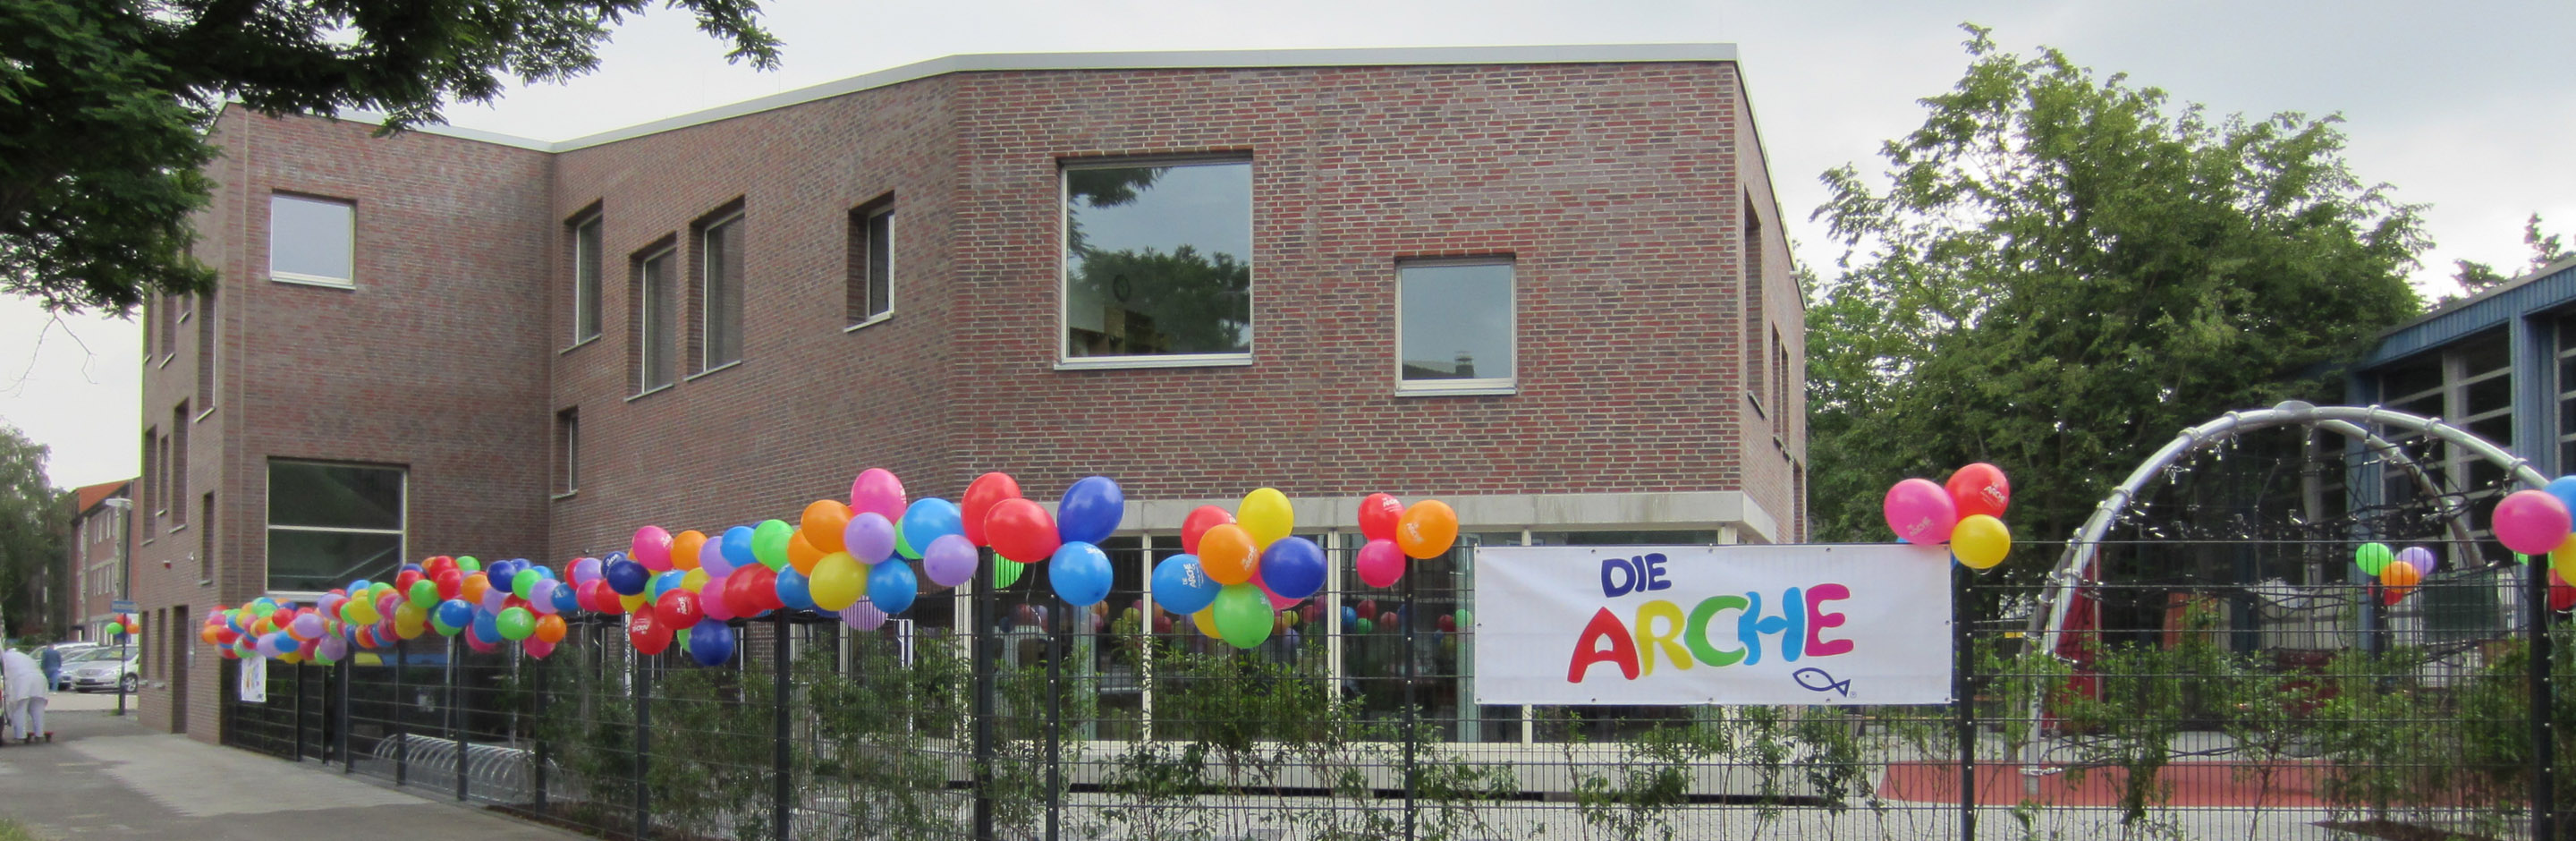 Freizeiteinrichtung Die Arche Düsseldorf, Außenansicht